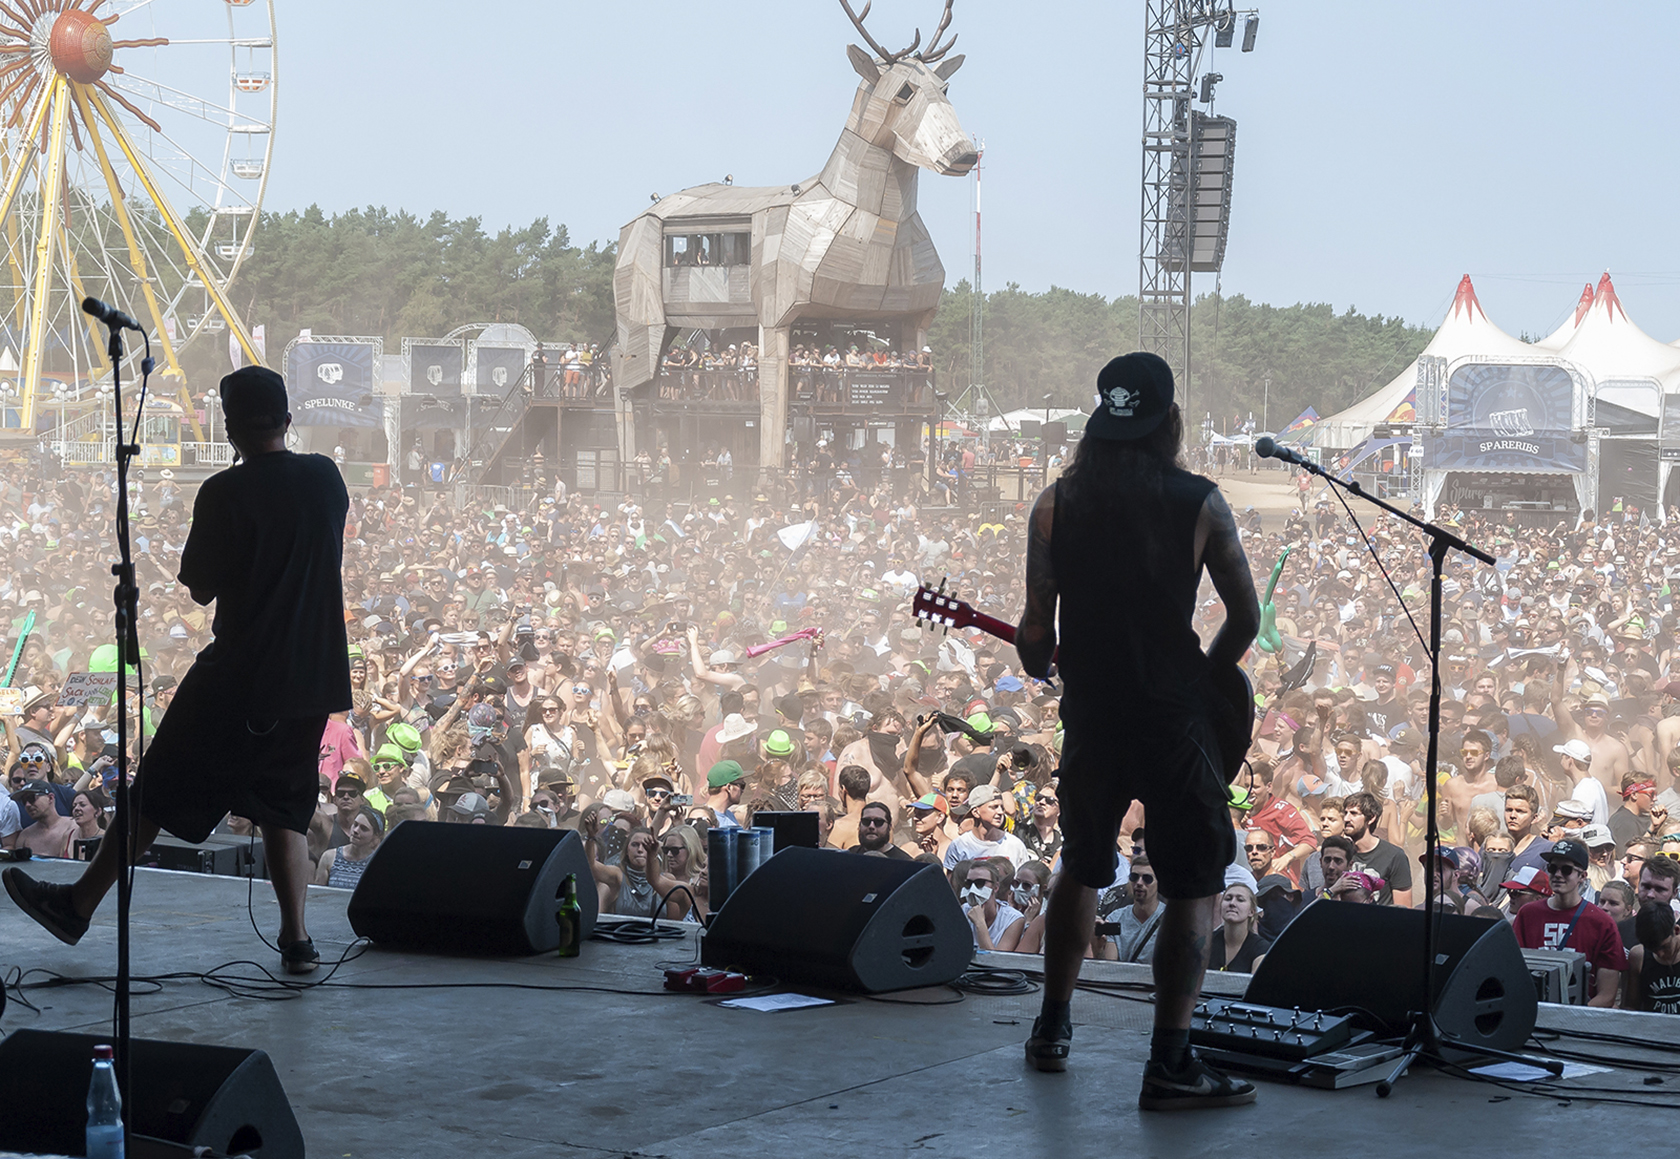 Fotoreportage Deichbrandfestival 2018 Festival Rockband Le Fly Konzert von der Bühne über die Fans